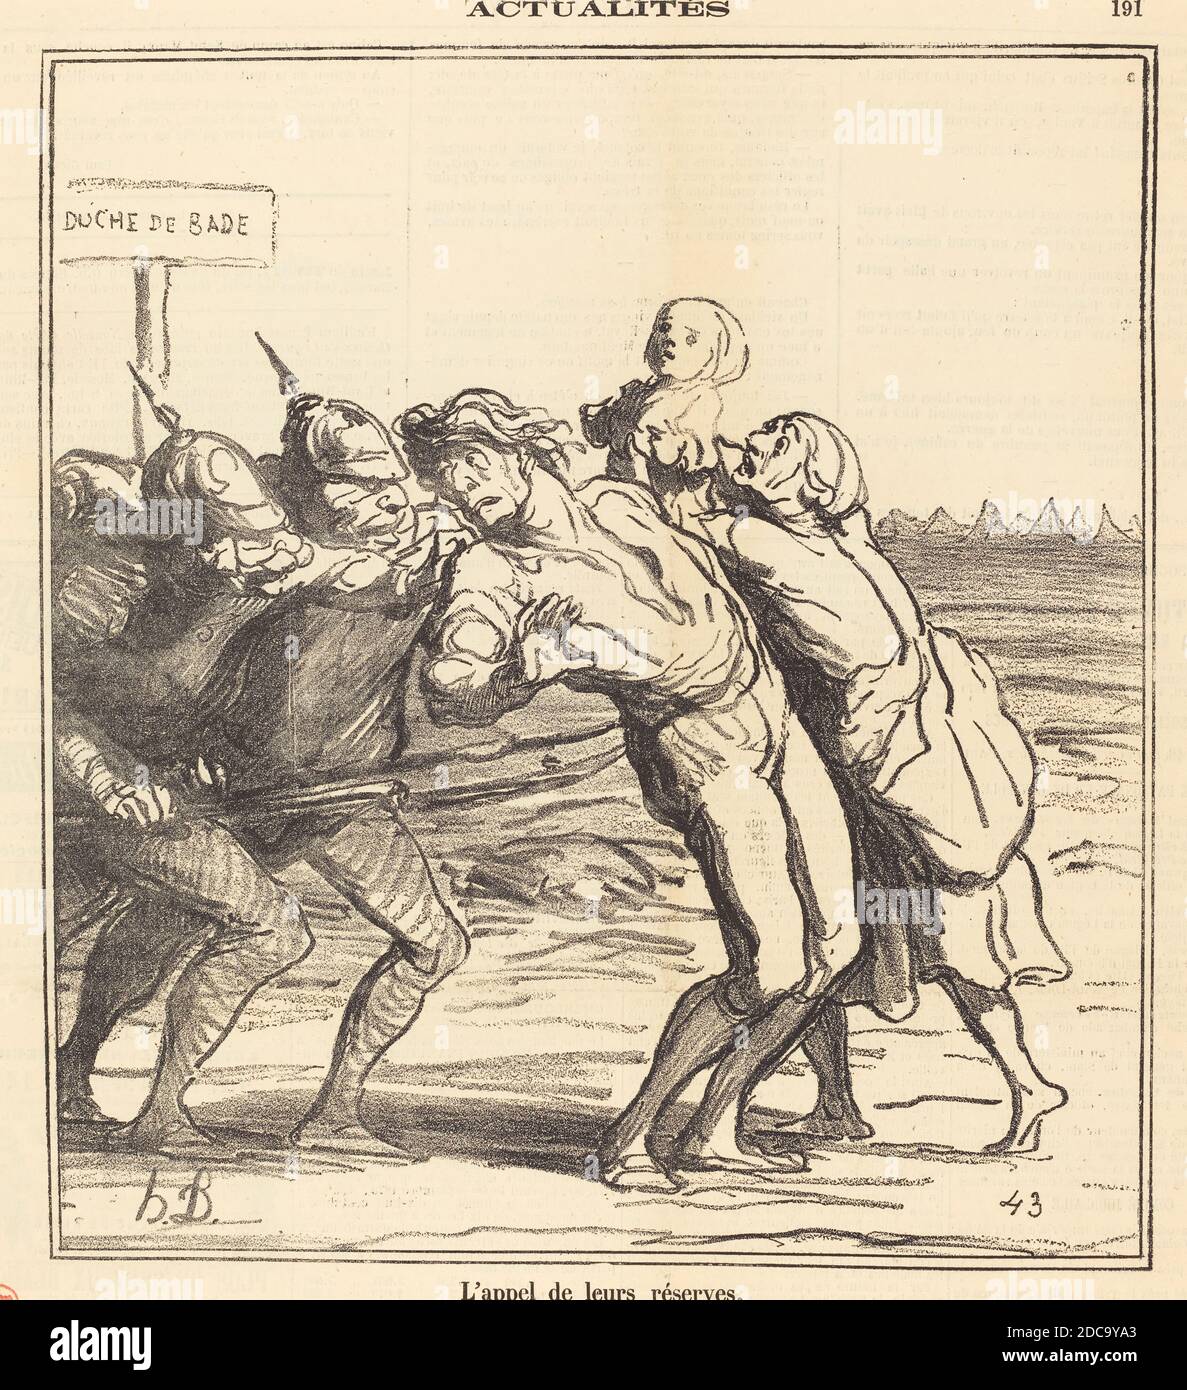 Honoré Daumier, (artista), francese, 1808 - 1879, l'appel de leurs réserves, Actualités, (serie), 1870, gillotype su carta da giornale Foto Stock